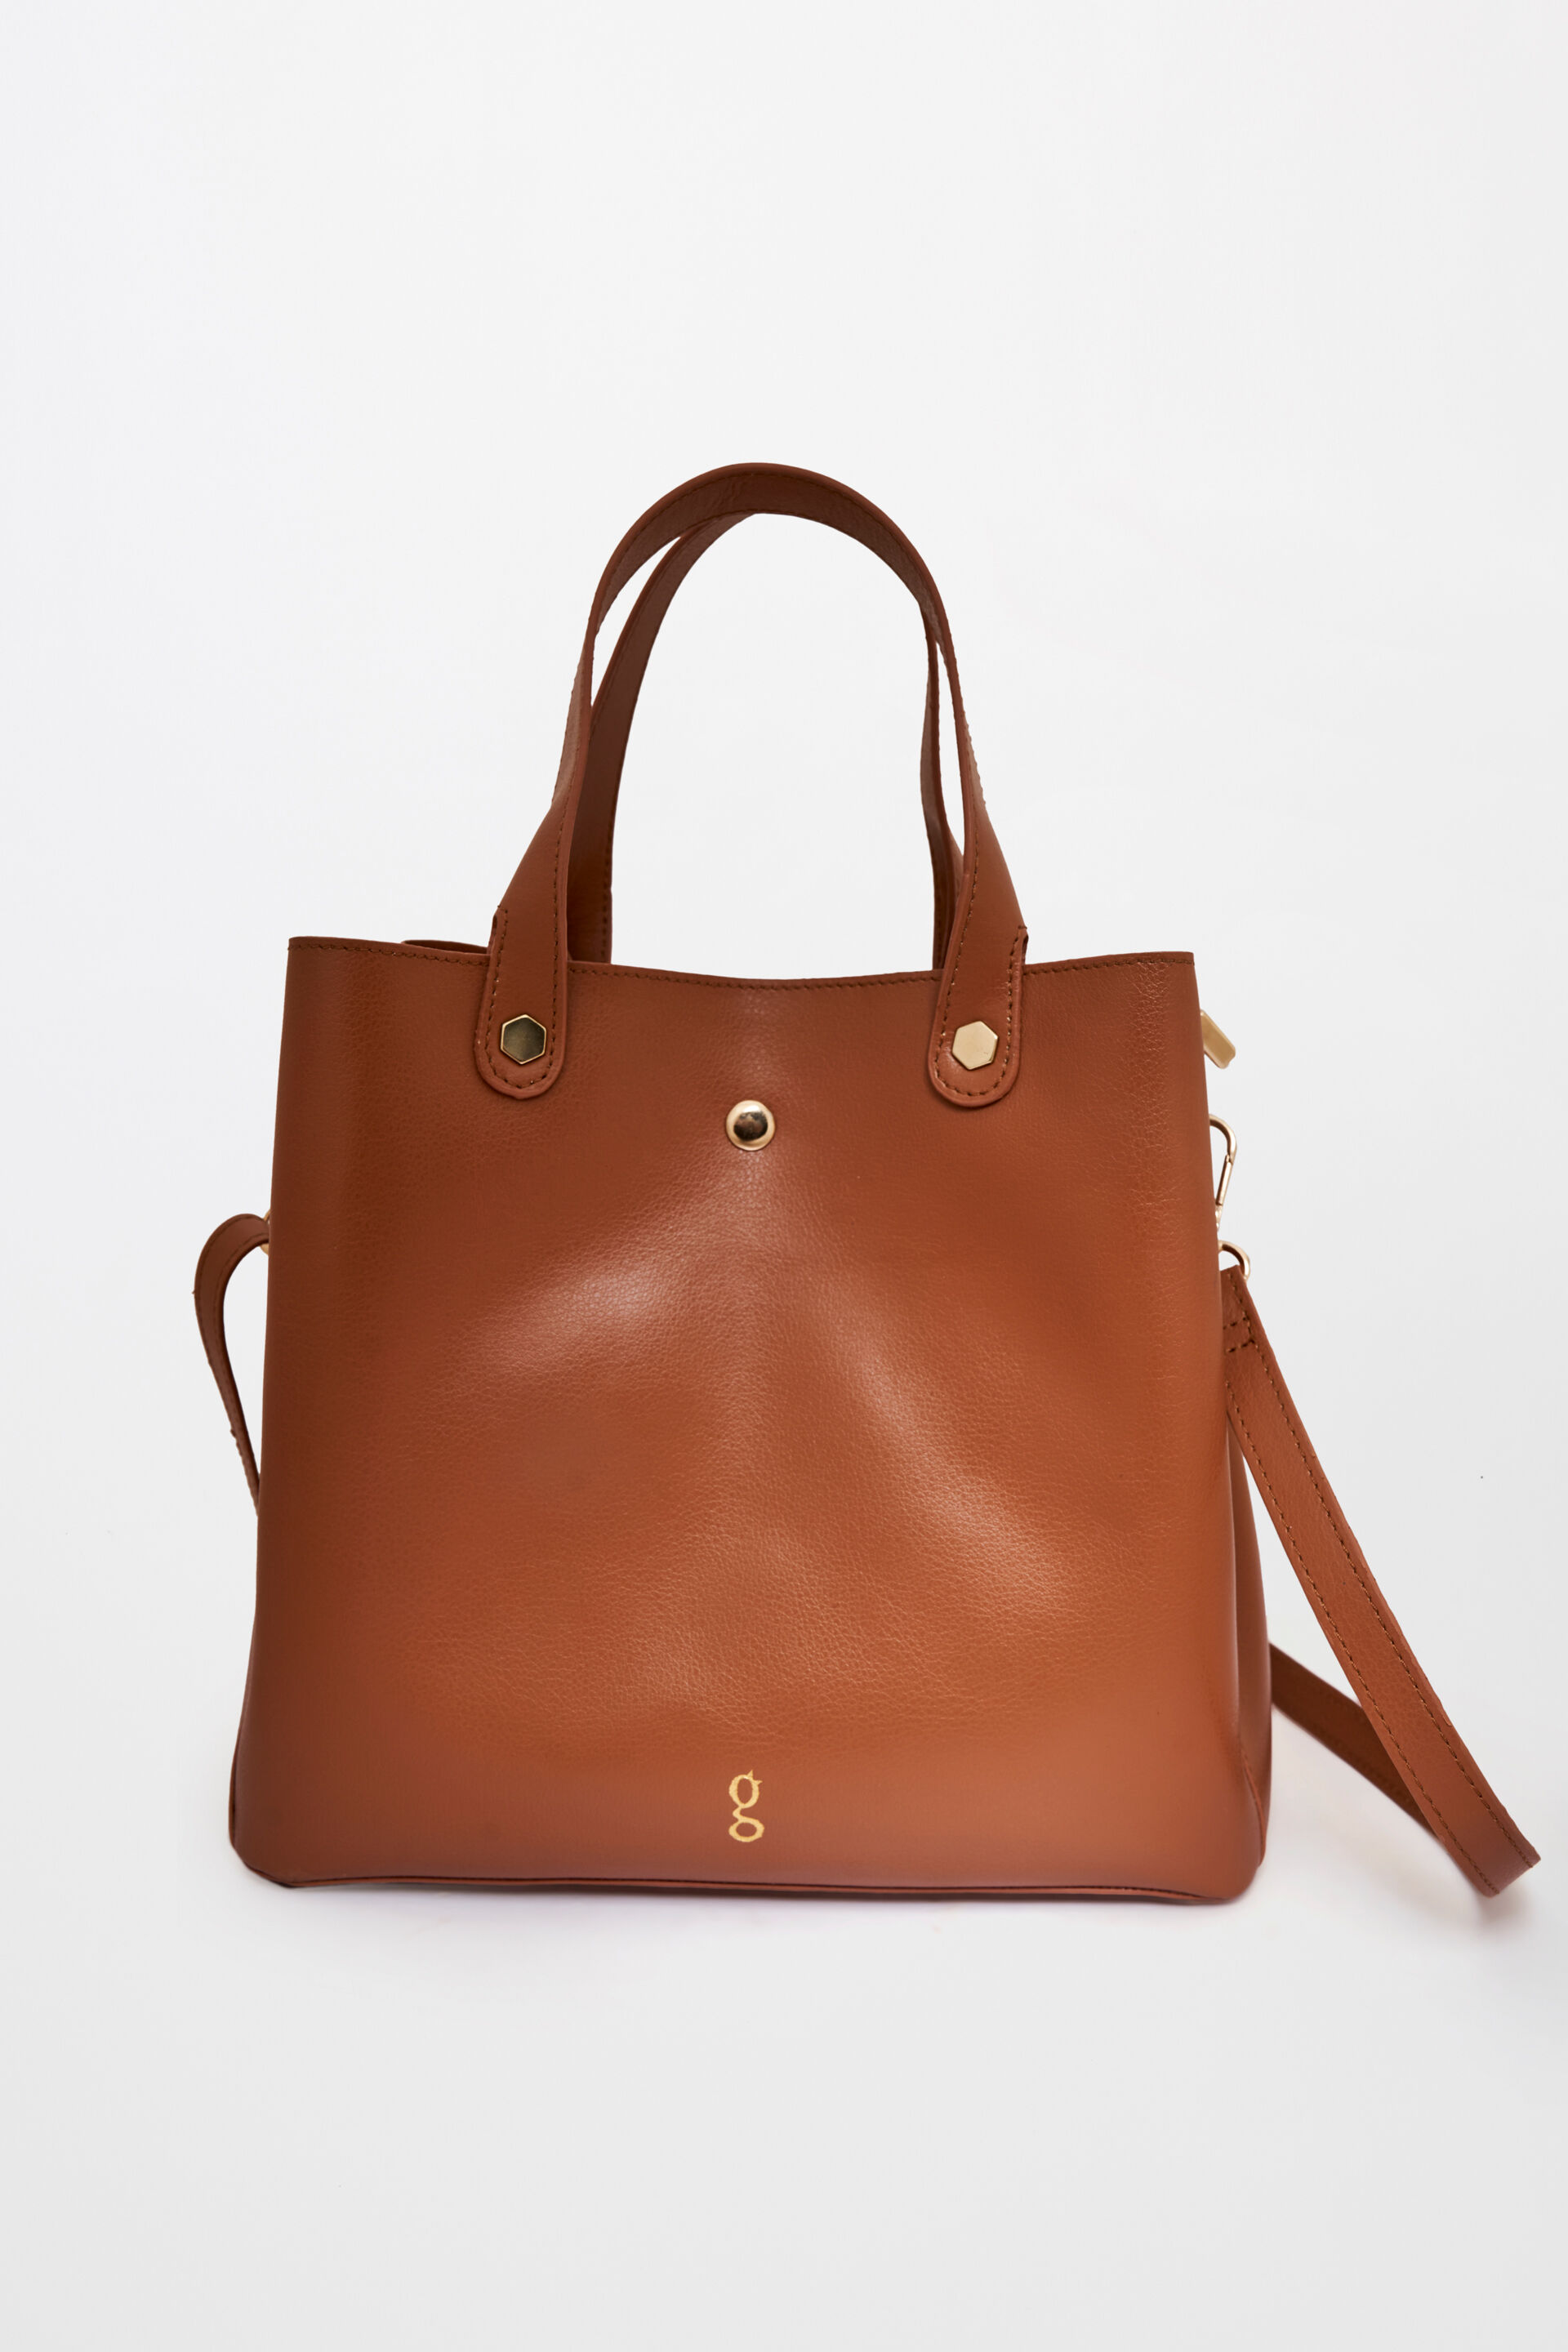 Women's Bags - Buy Bags Online for Women | Westside